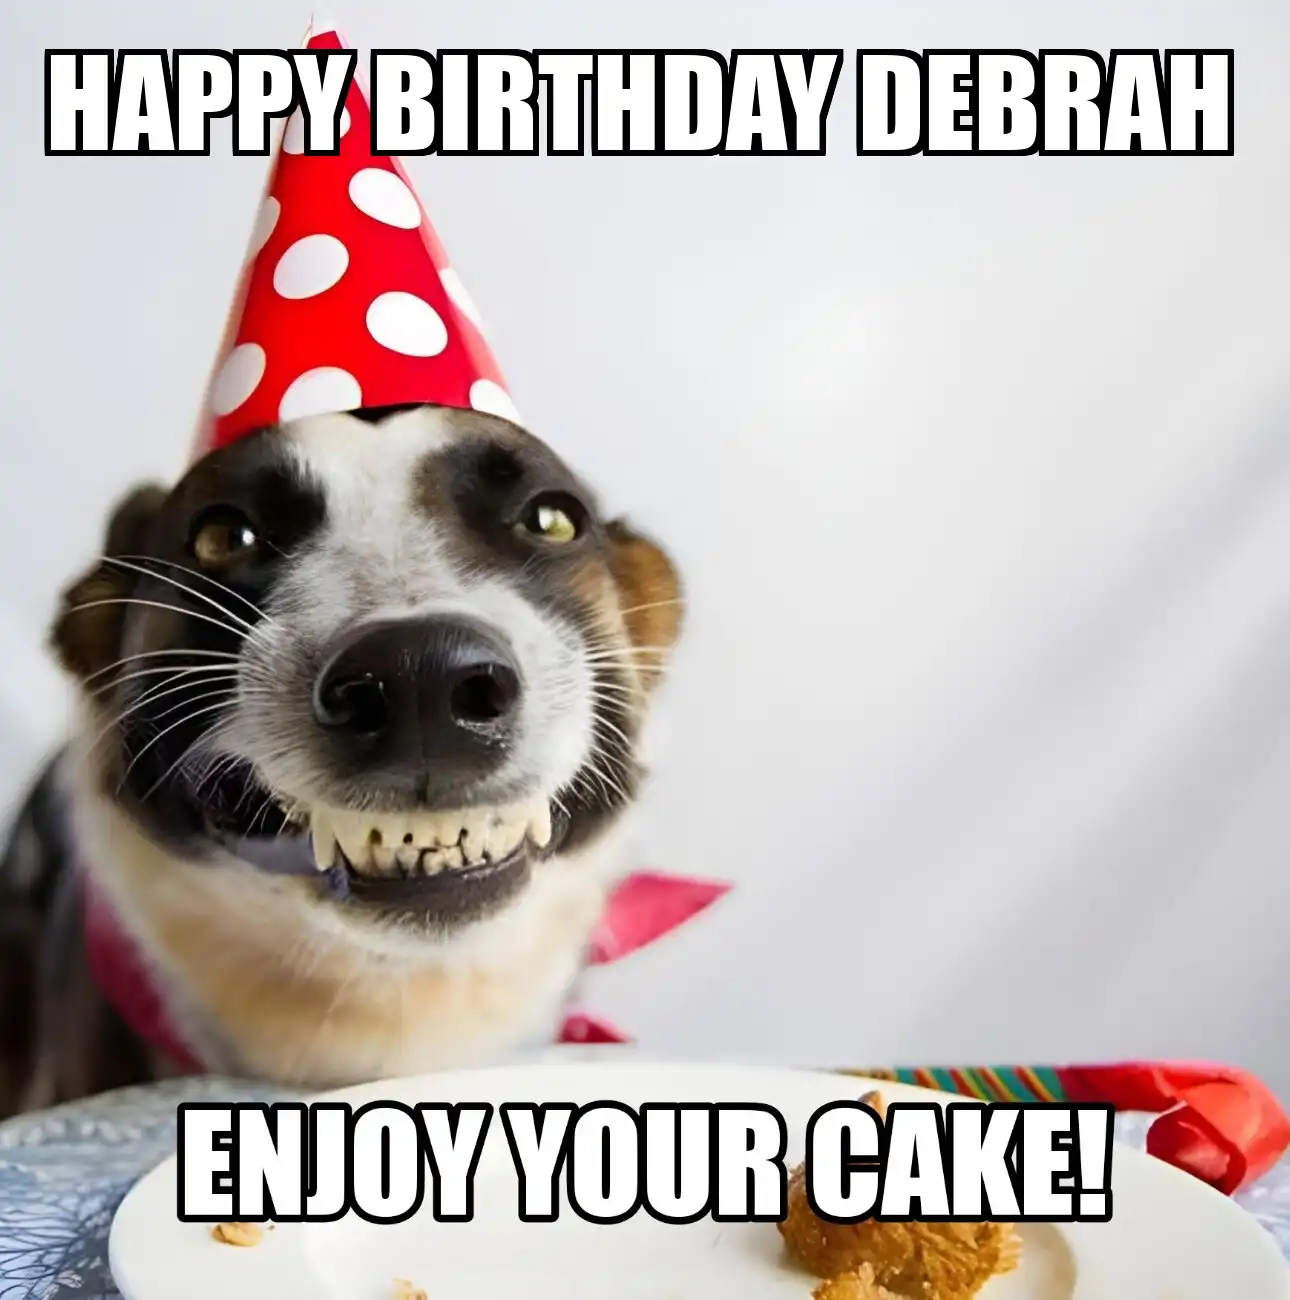 Happy Birthday Debrah Enjoy Your Cake Dog Meme